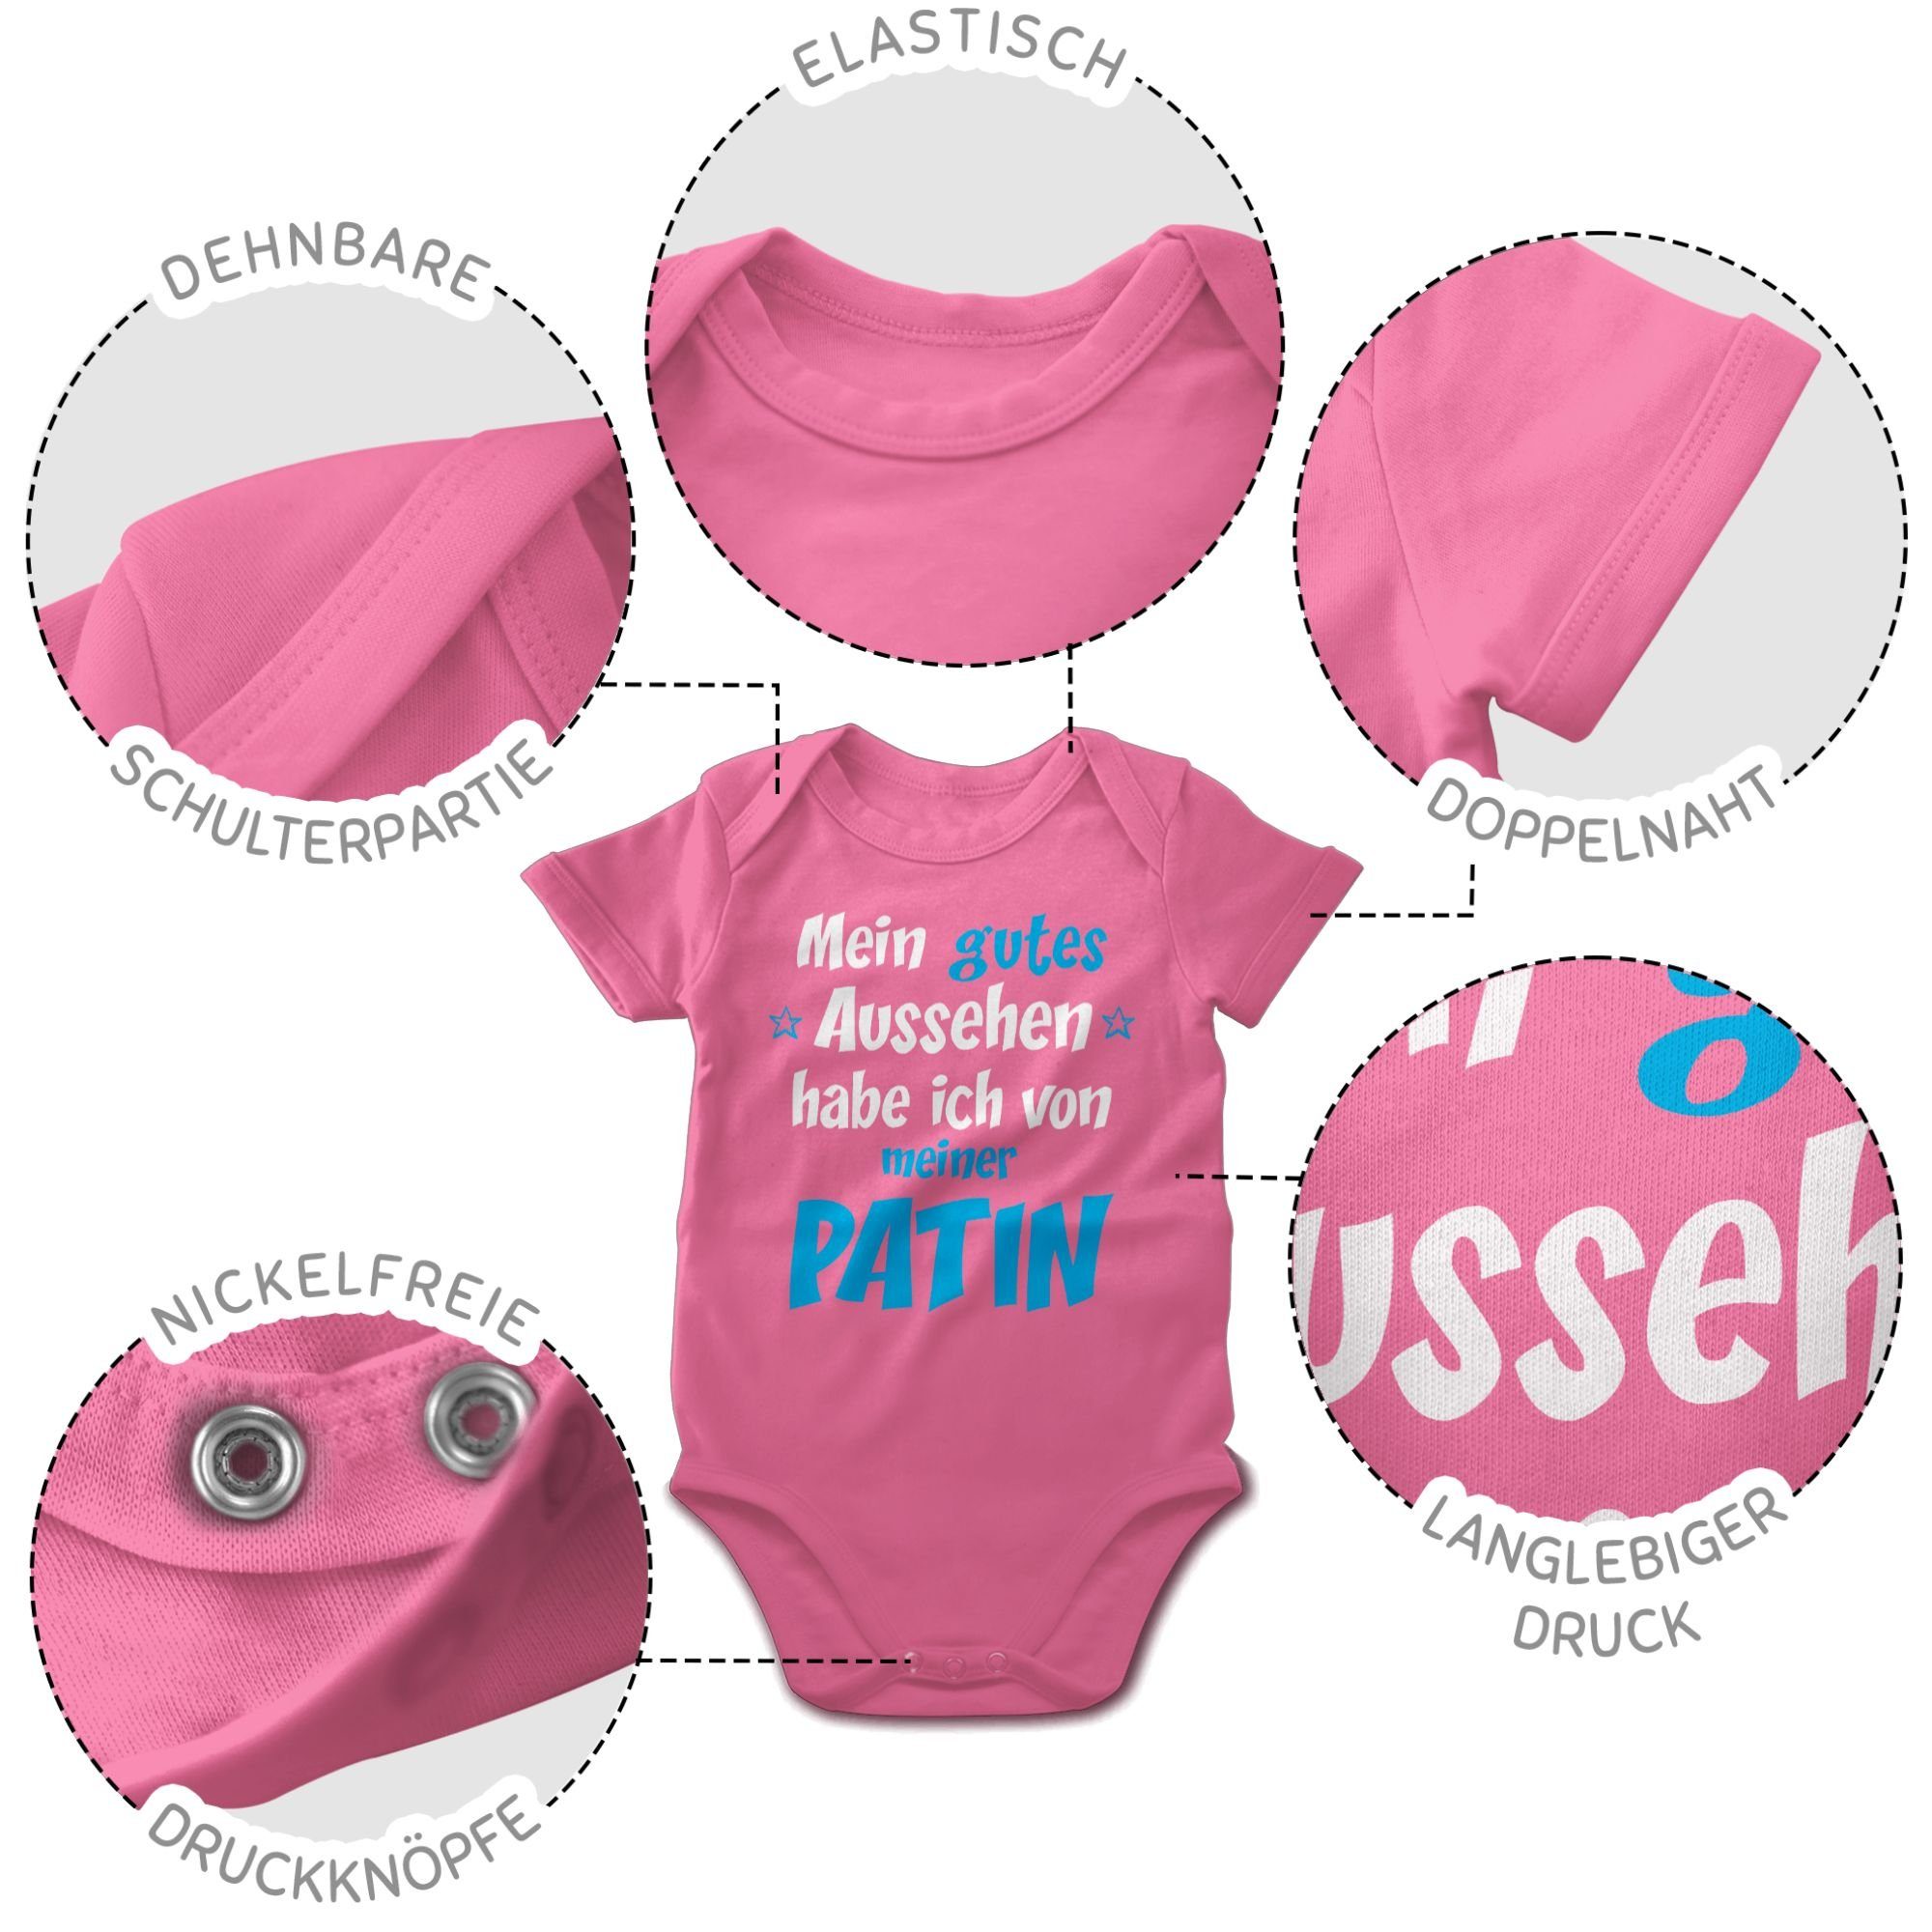 Shirtracer Baby Pink - Patentante Shirtbody Junge Patin 2 Aussehen blau/weiß Gutes